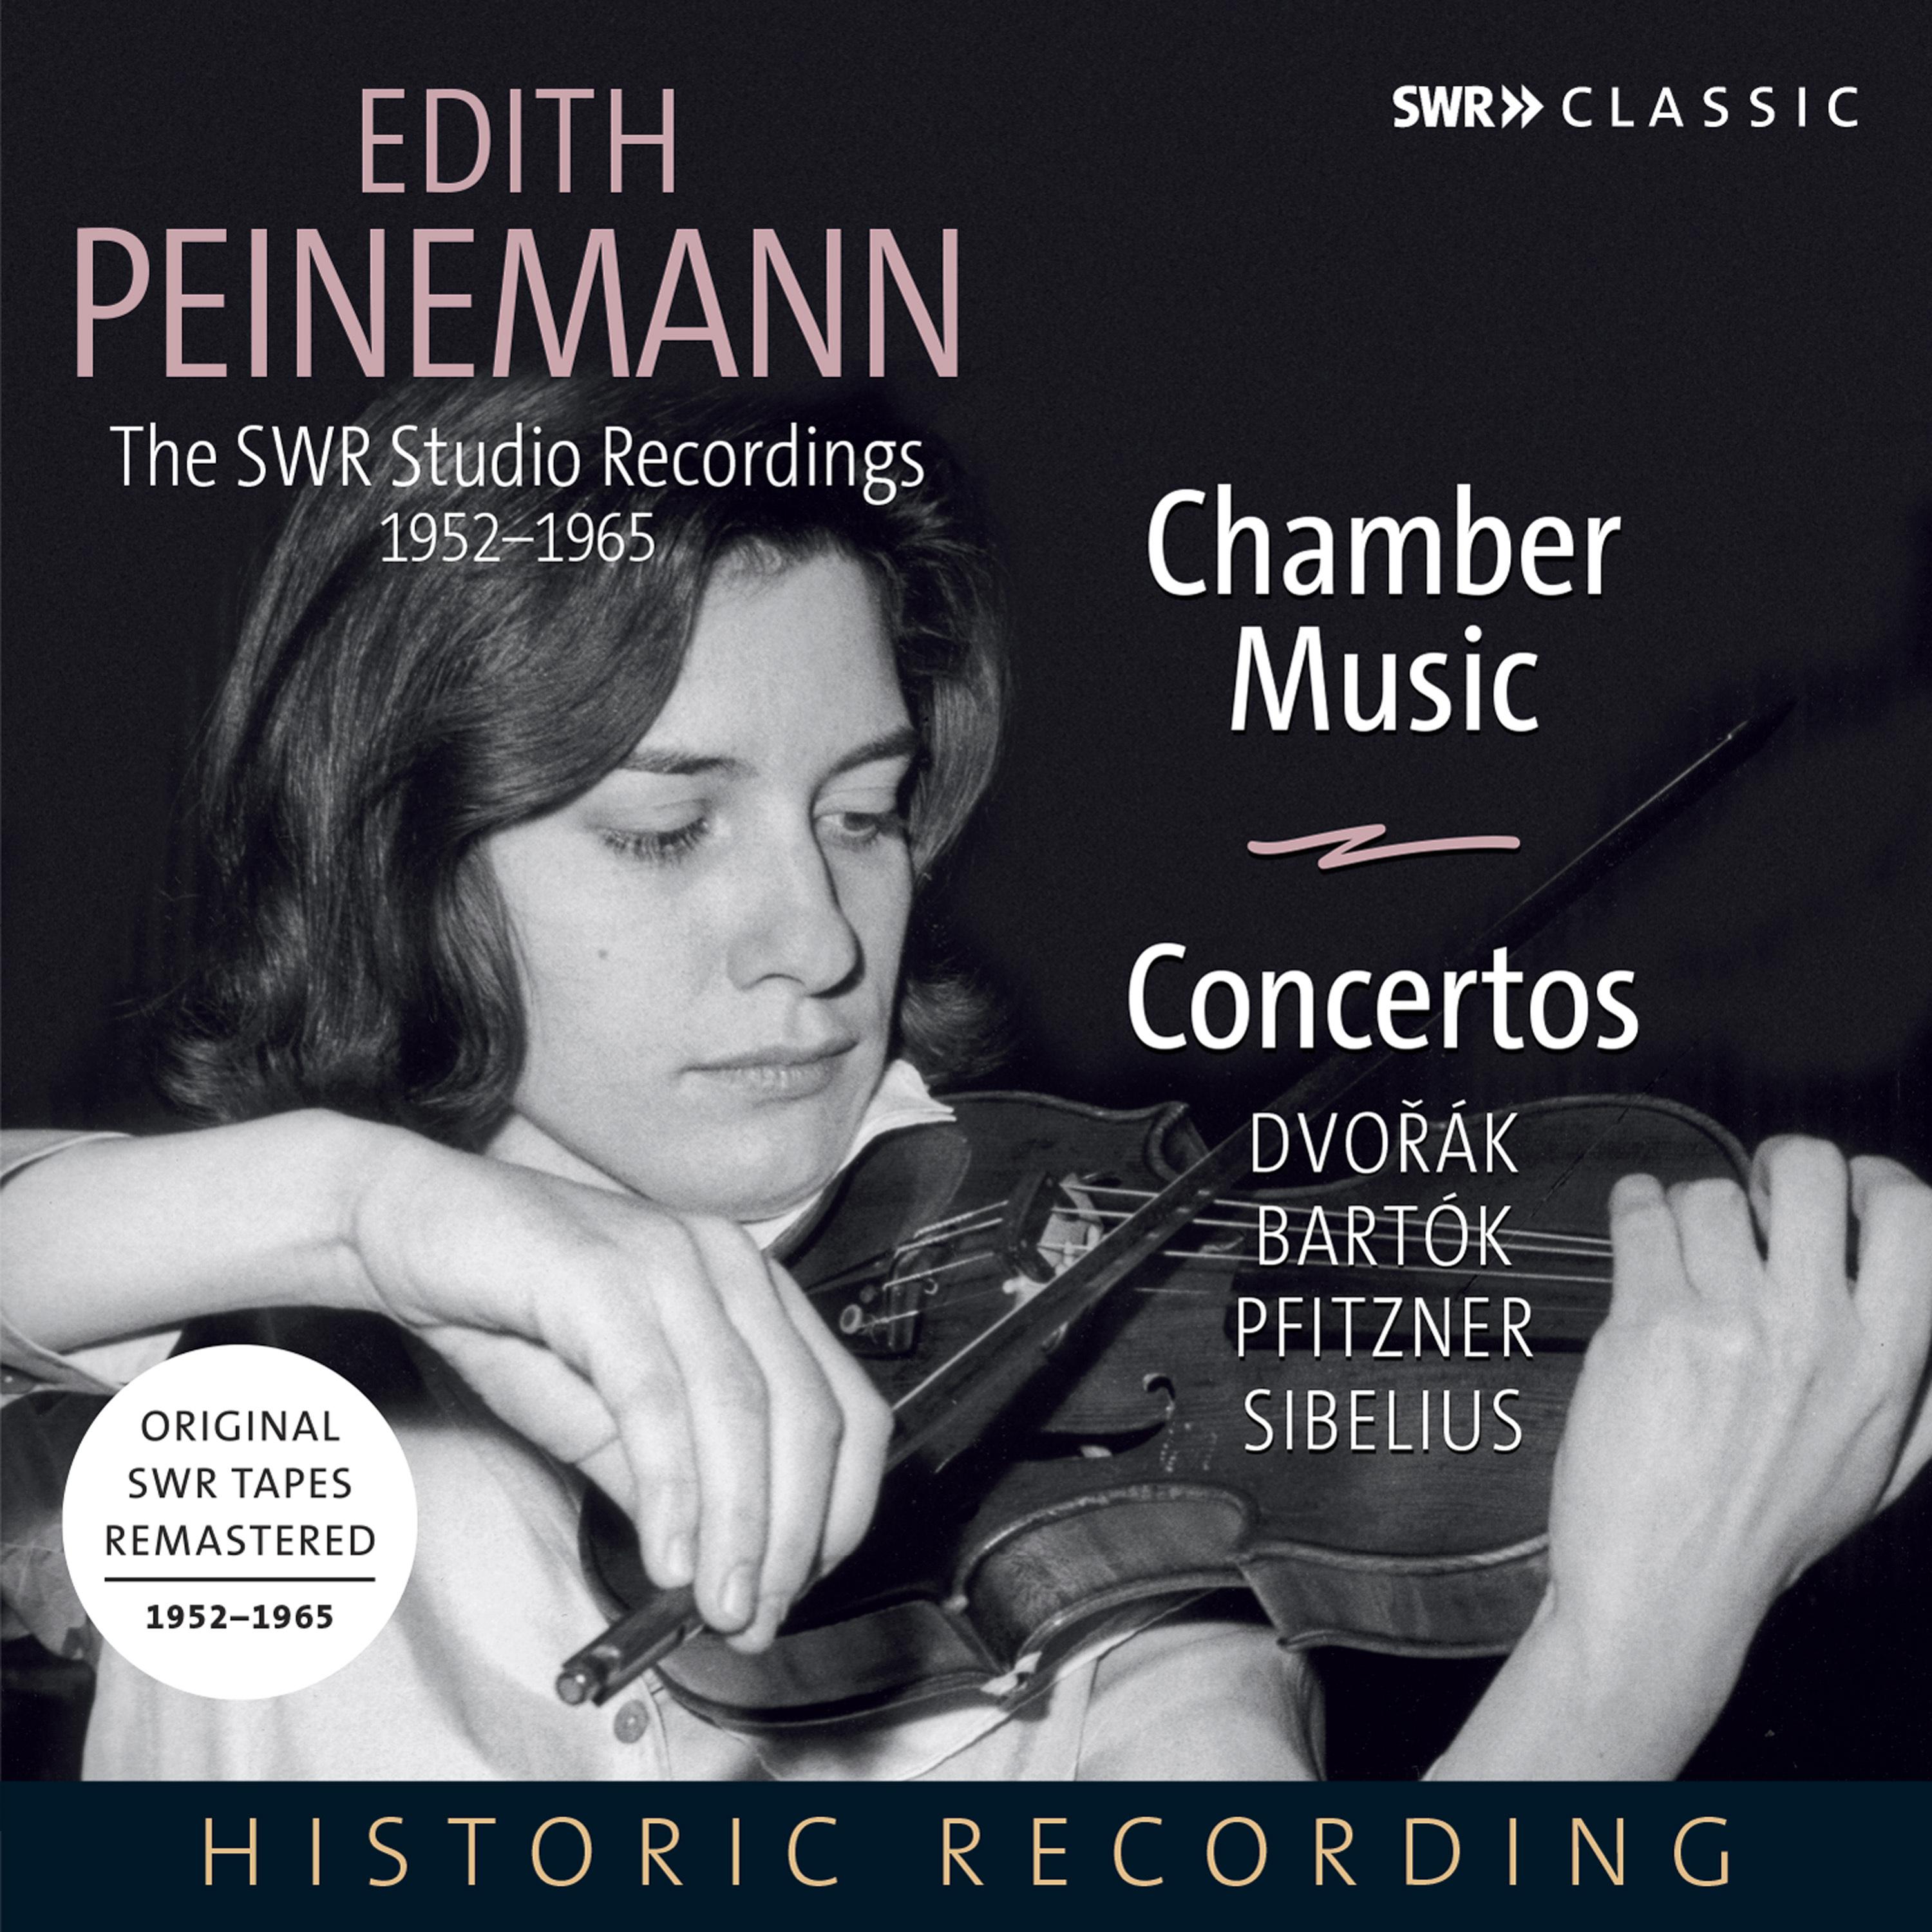 Edith Peinemann - Violin Sonata in E Minor, BWV 1023:I. Moderato - II. Adagio ma non tanto